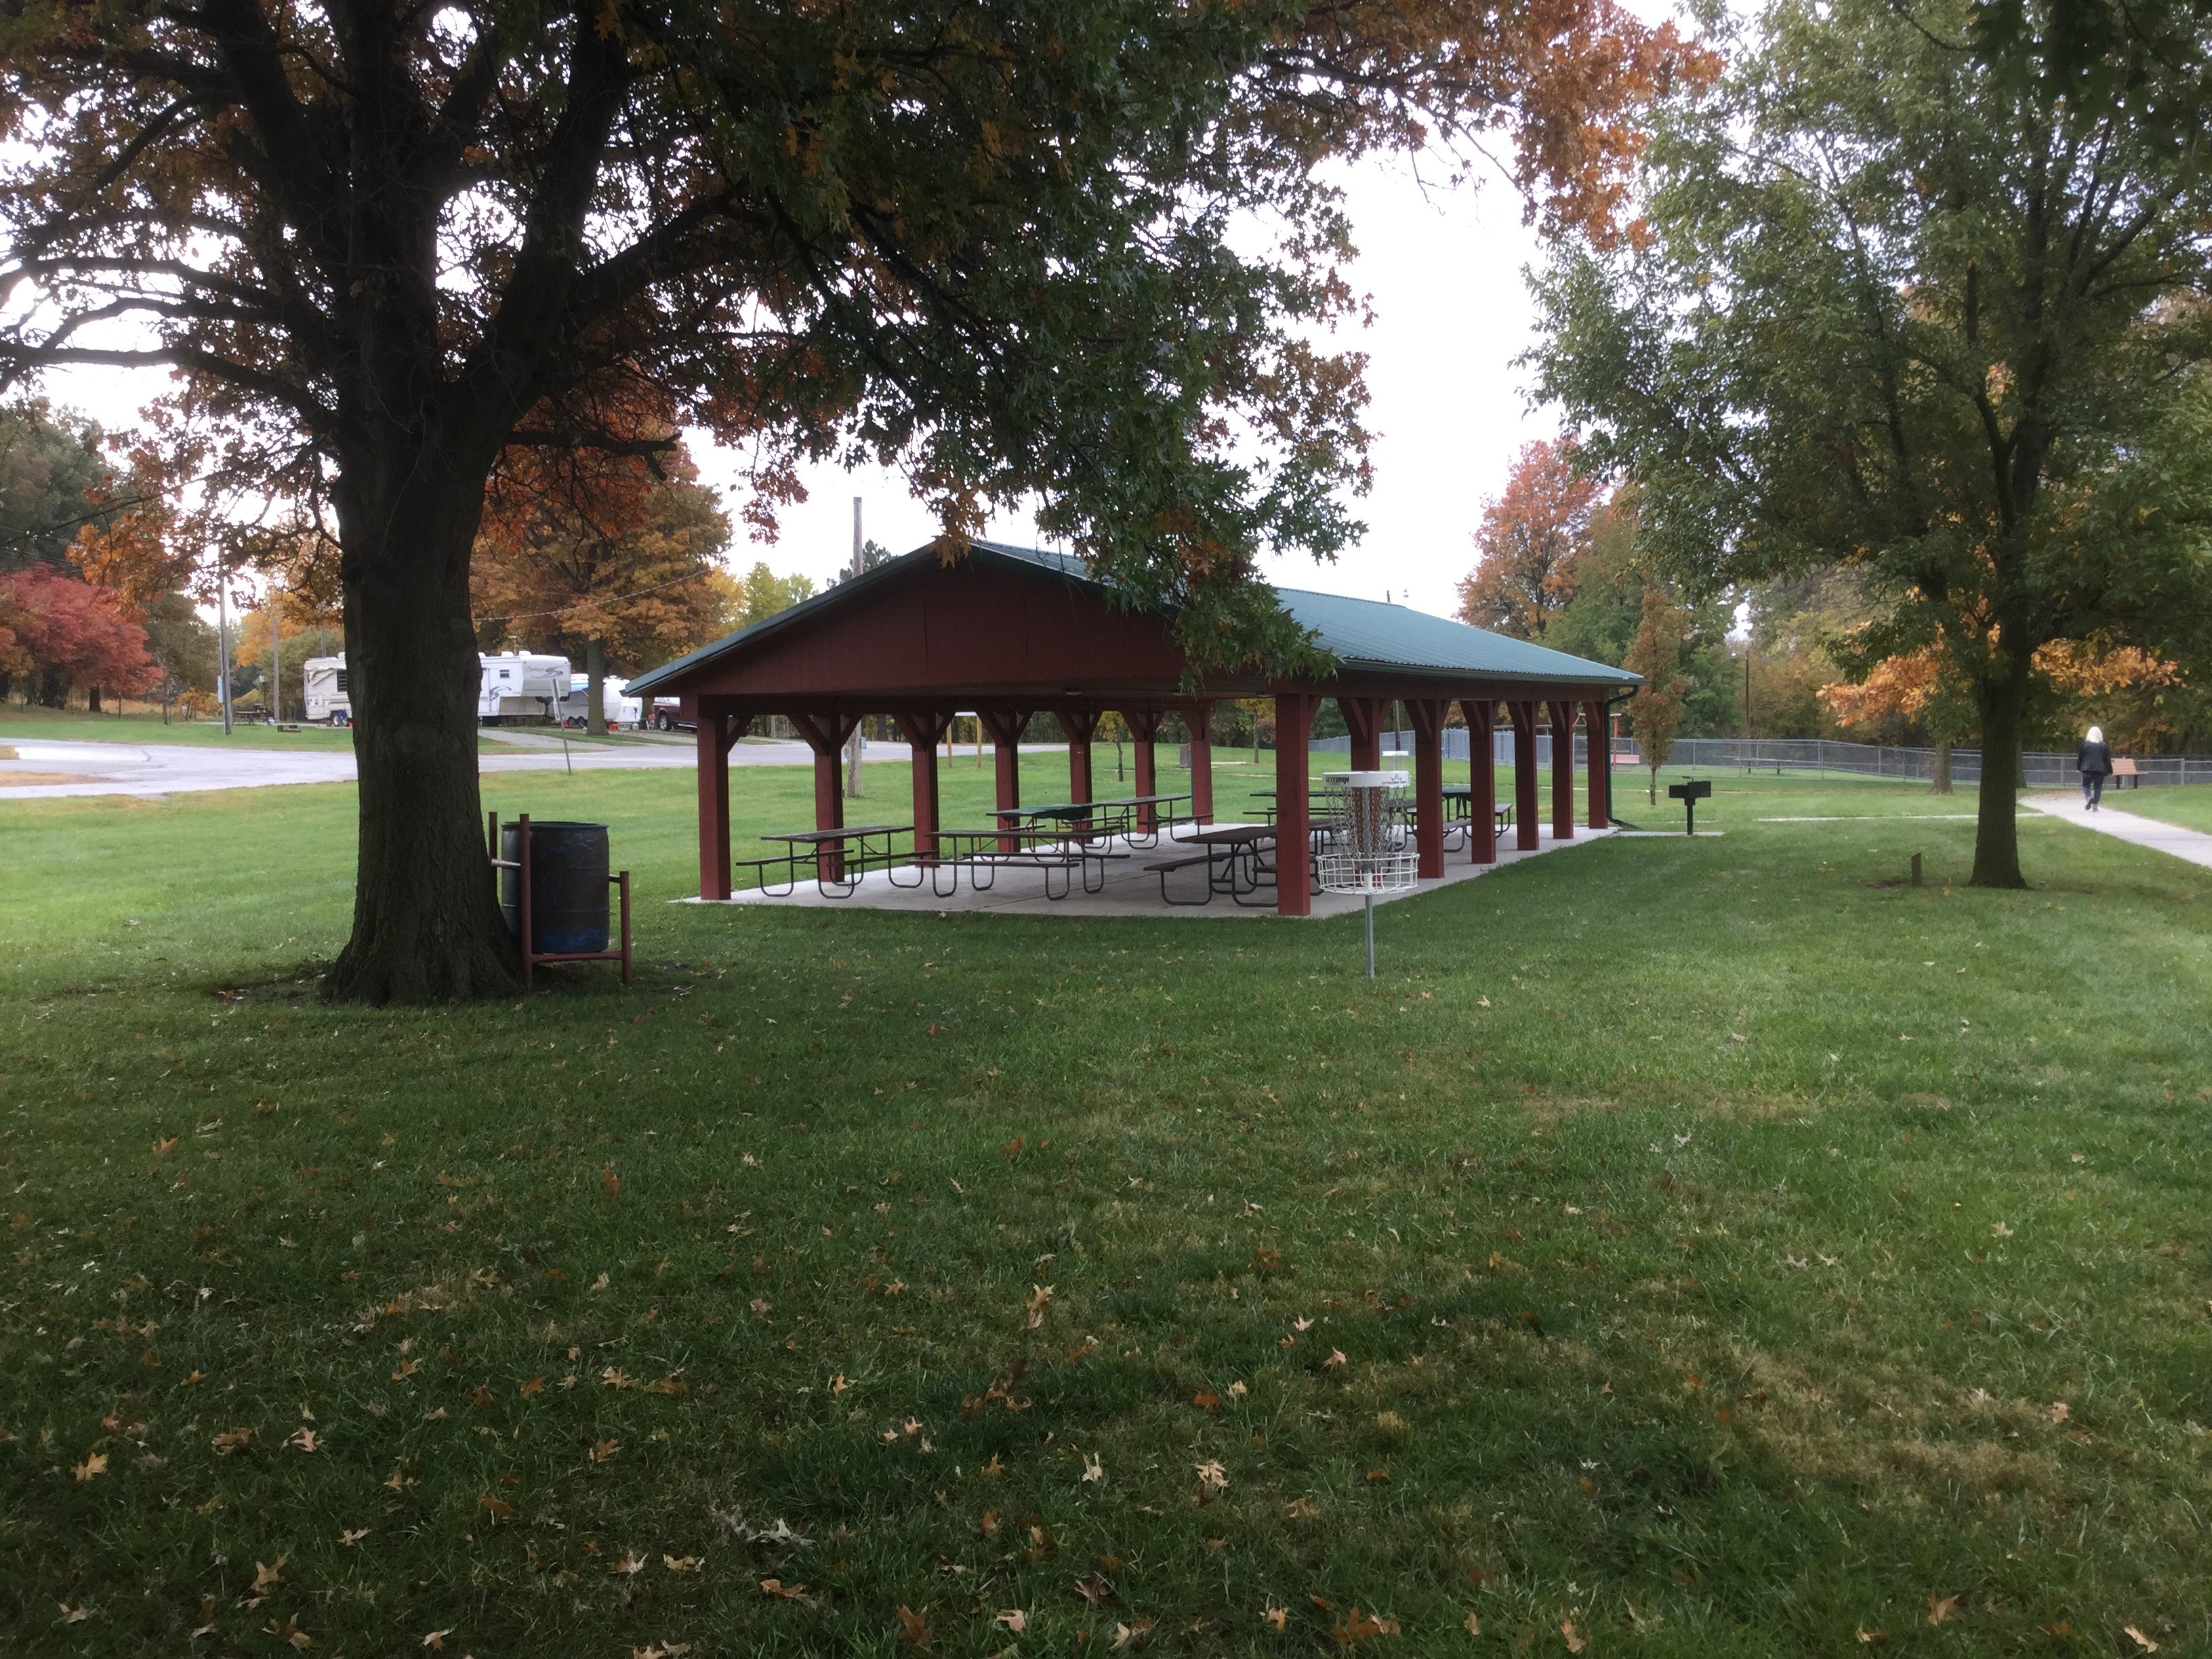 Large picnic shelter